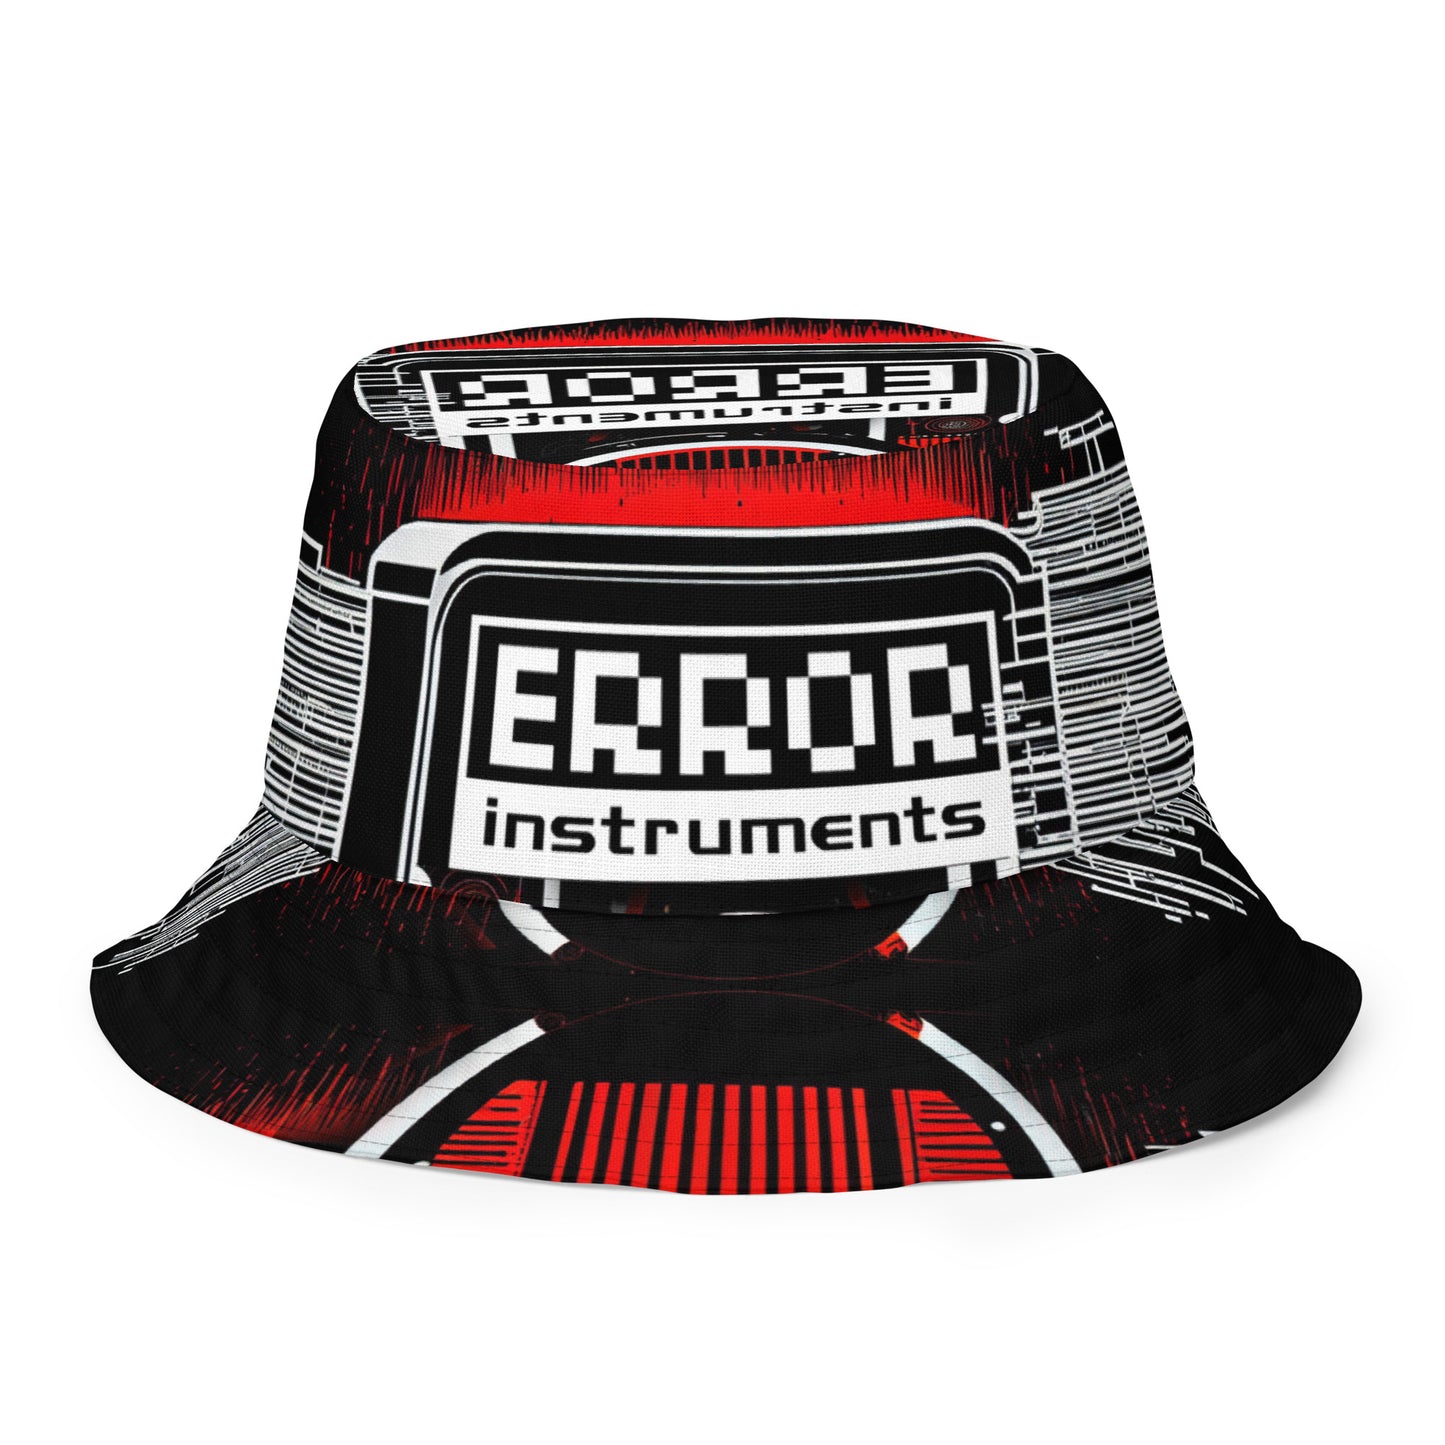 Error Instruments 01 Reversible Fishermans Hat